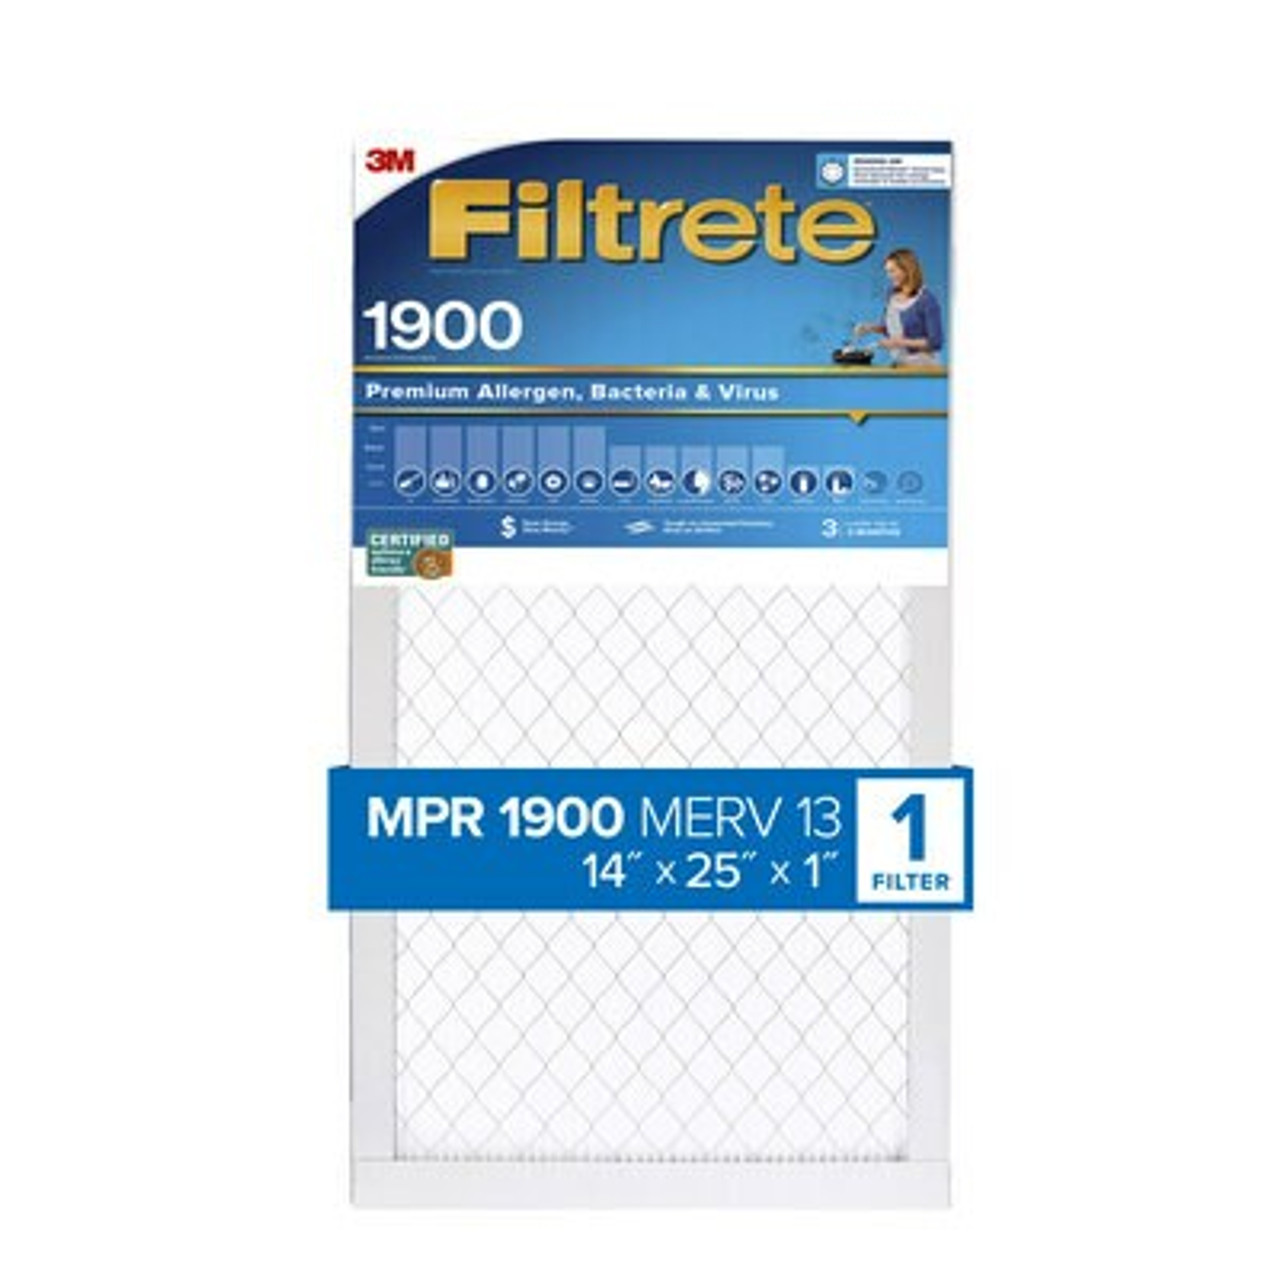 Filtrete™ High Performance Air Filter 1900 MPR UA04-4, 14 in x 25 in x 1 in